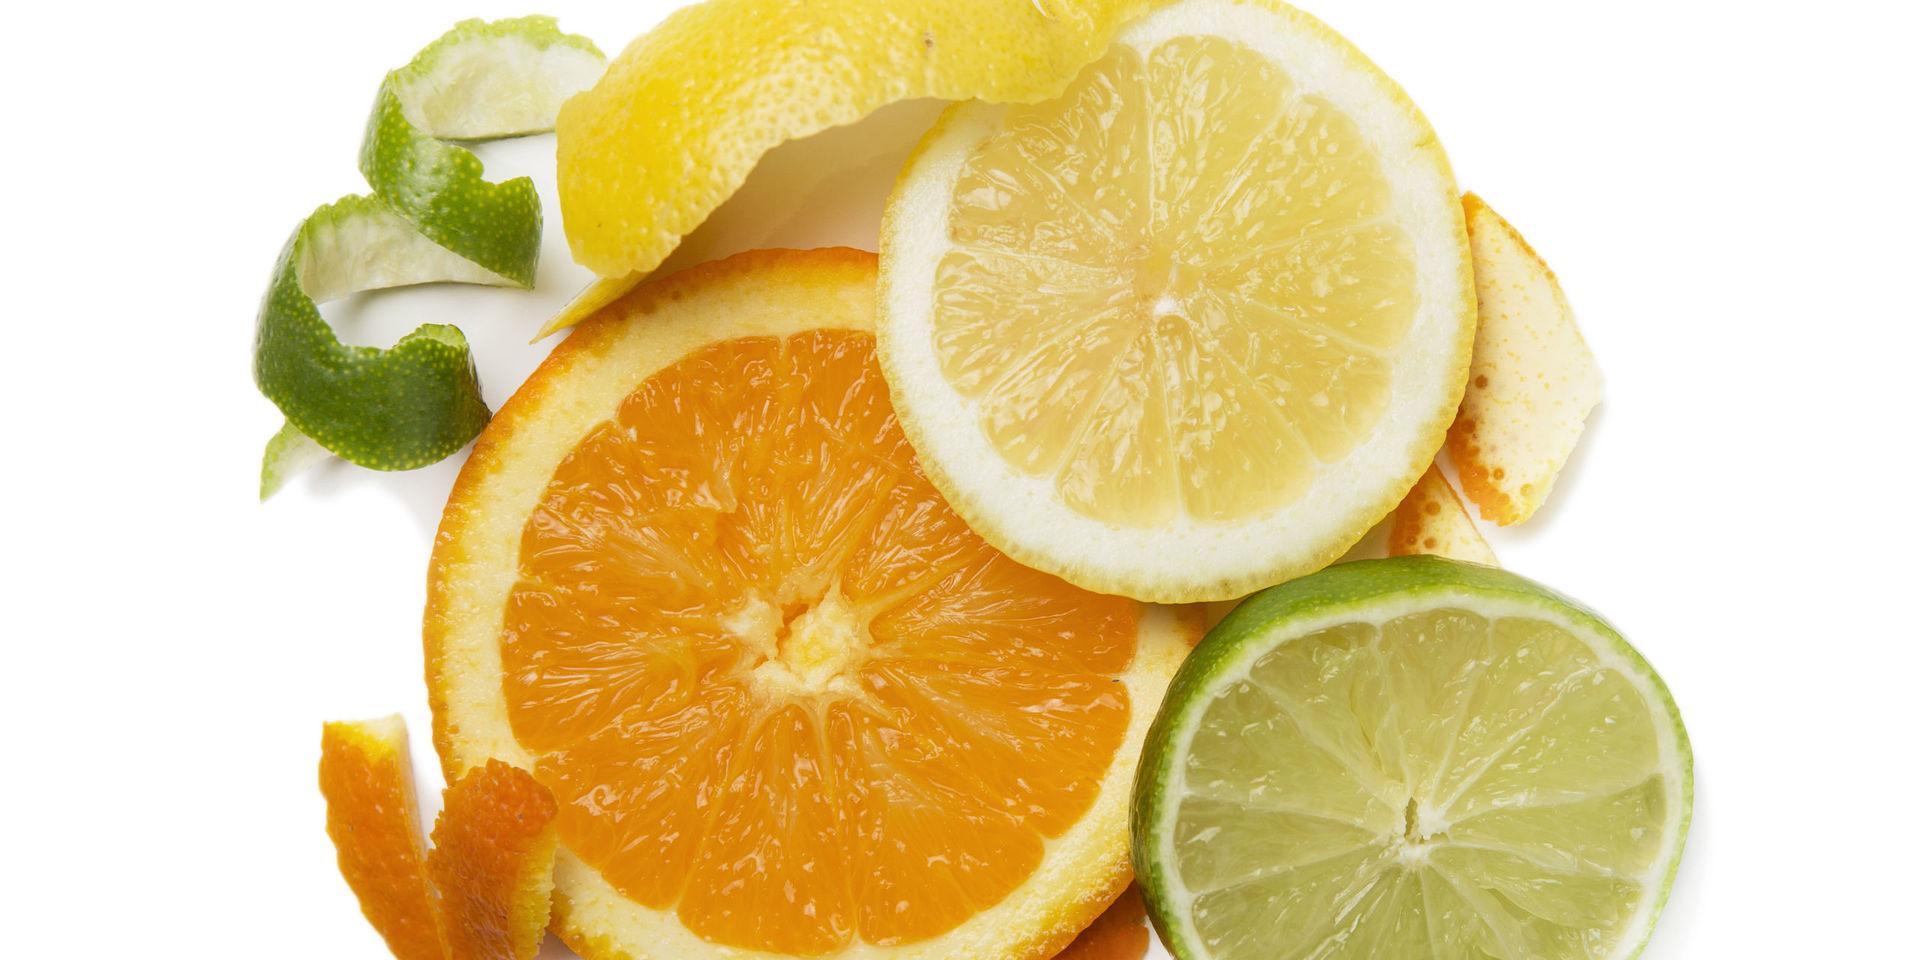 En av fem citrusfrukter bär spår av bekämpningsmedlet klorpyrifos, enligt Livsmedelsverkets nya kontroller.